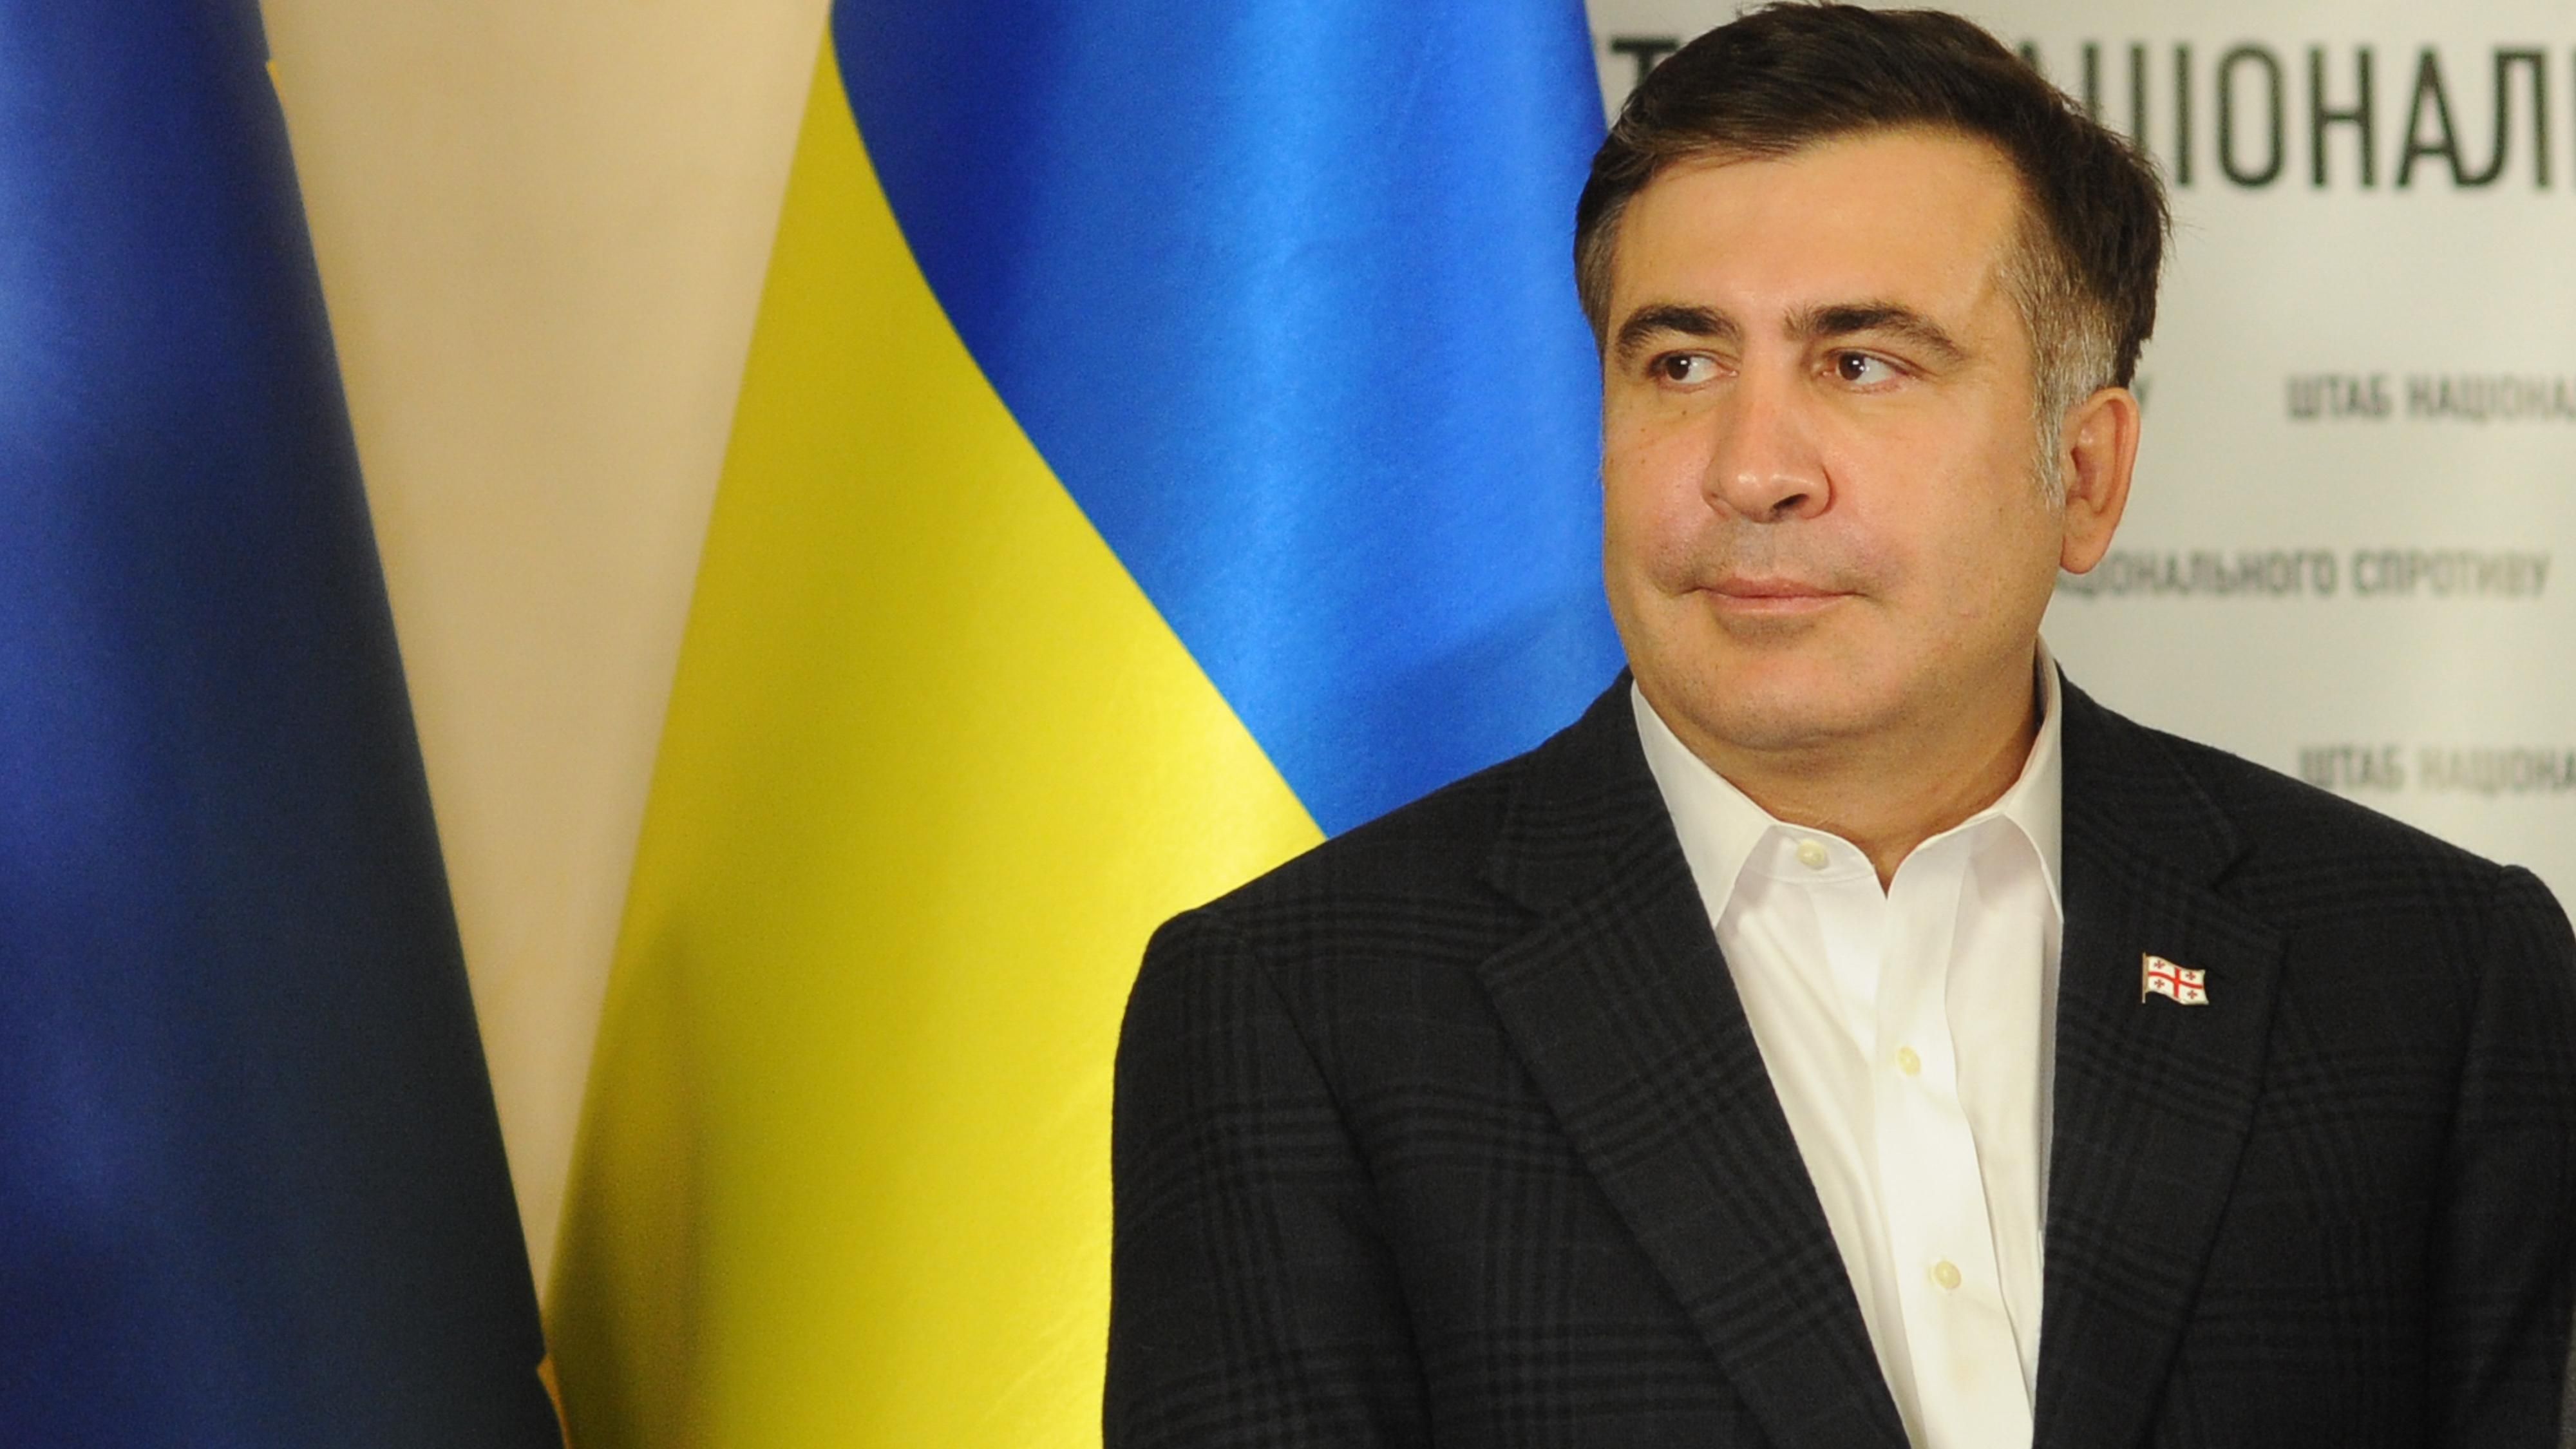 Саакашвили - факты из биографии и политической деятельности